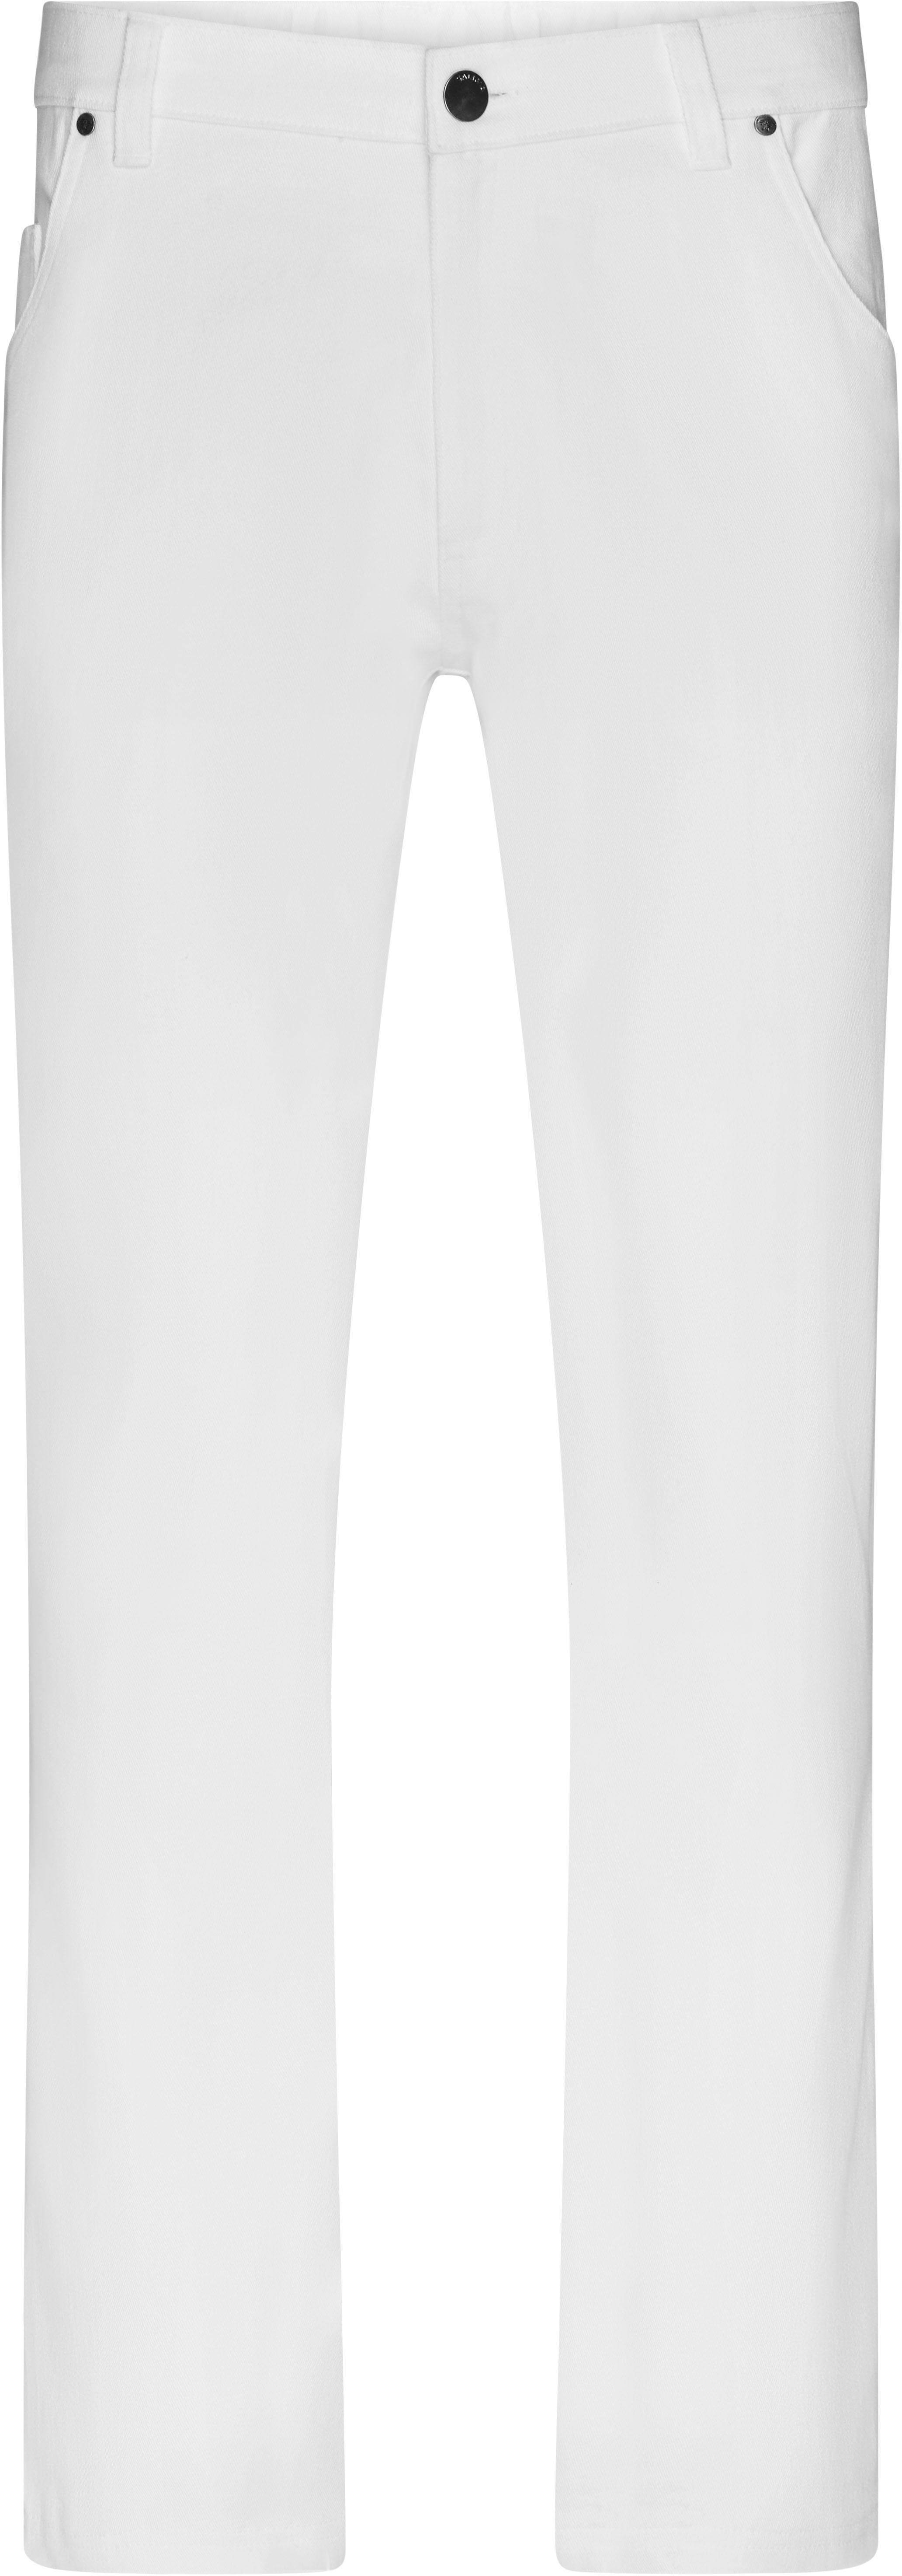 Pánské elastické kalhoty JN 3002 Barva: bílá, Velikost: 58